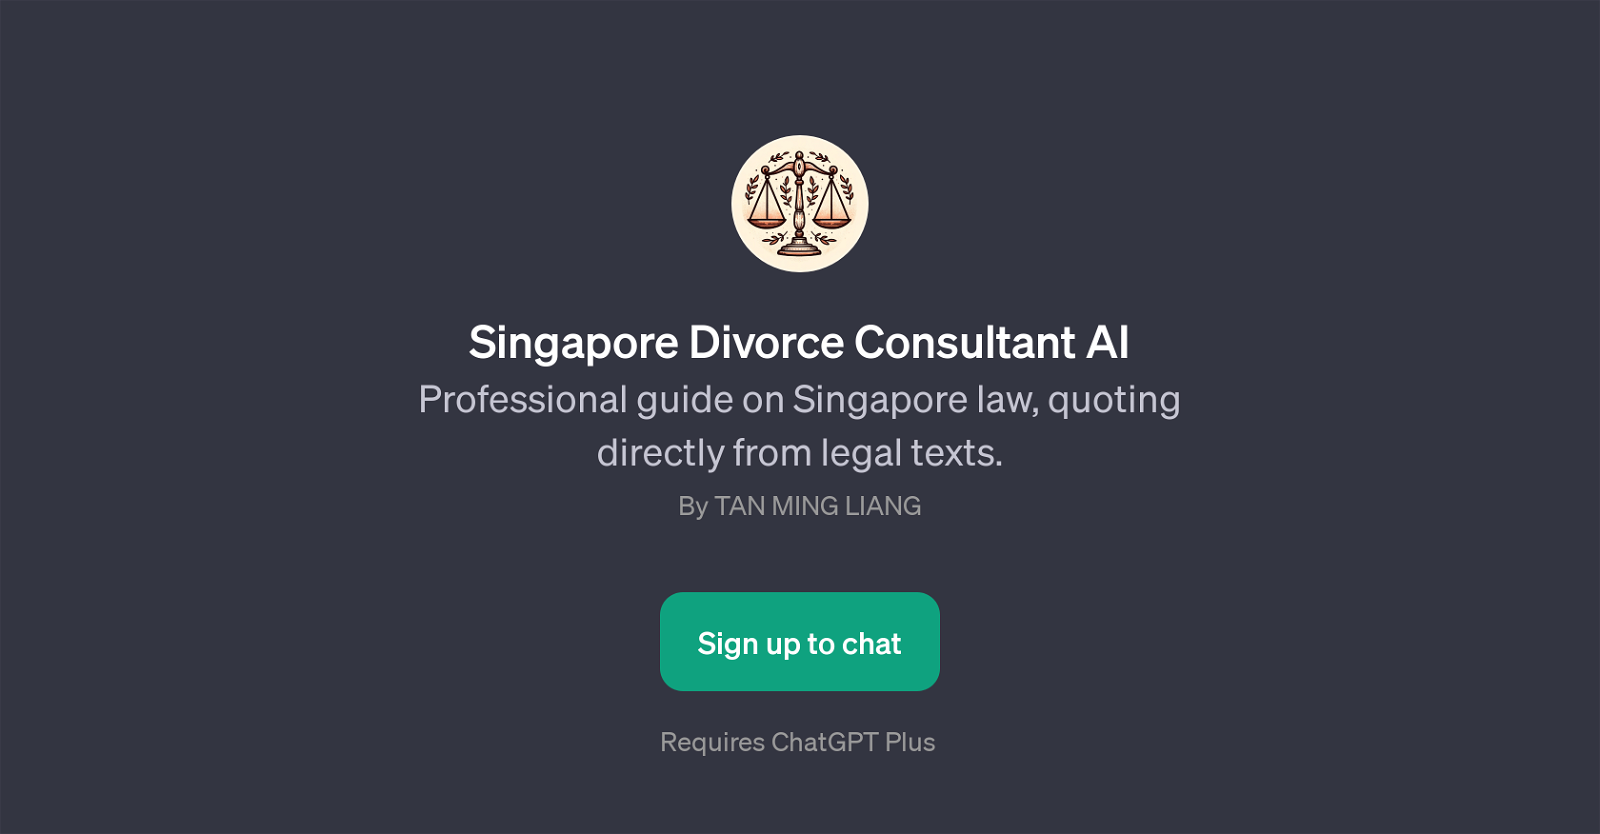 Singapore Divorce Consultant AI website